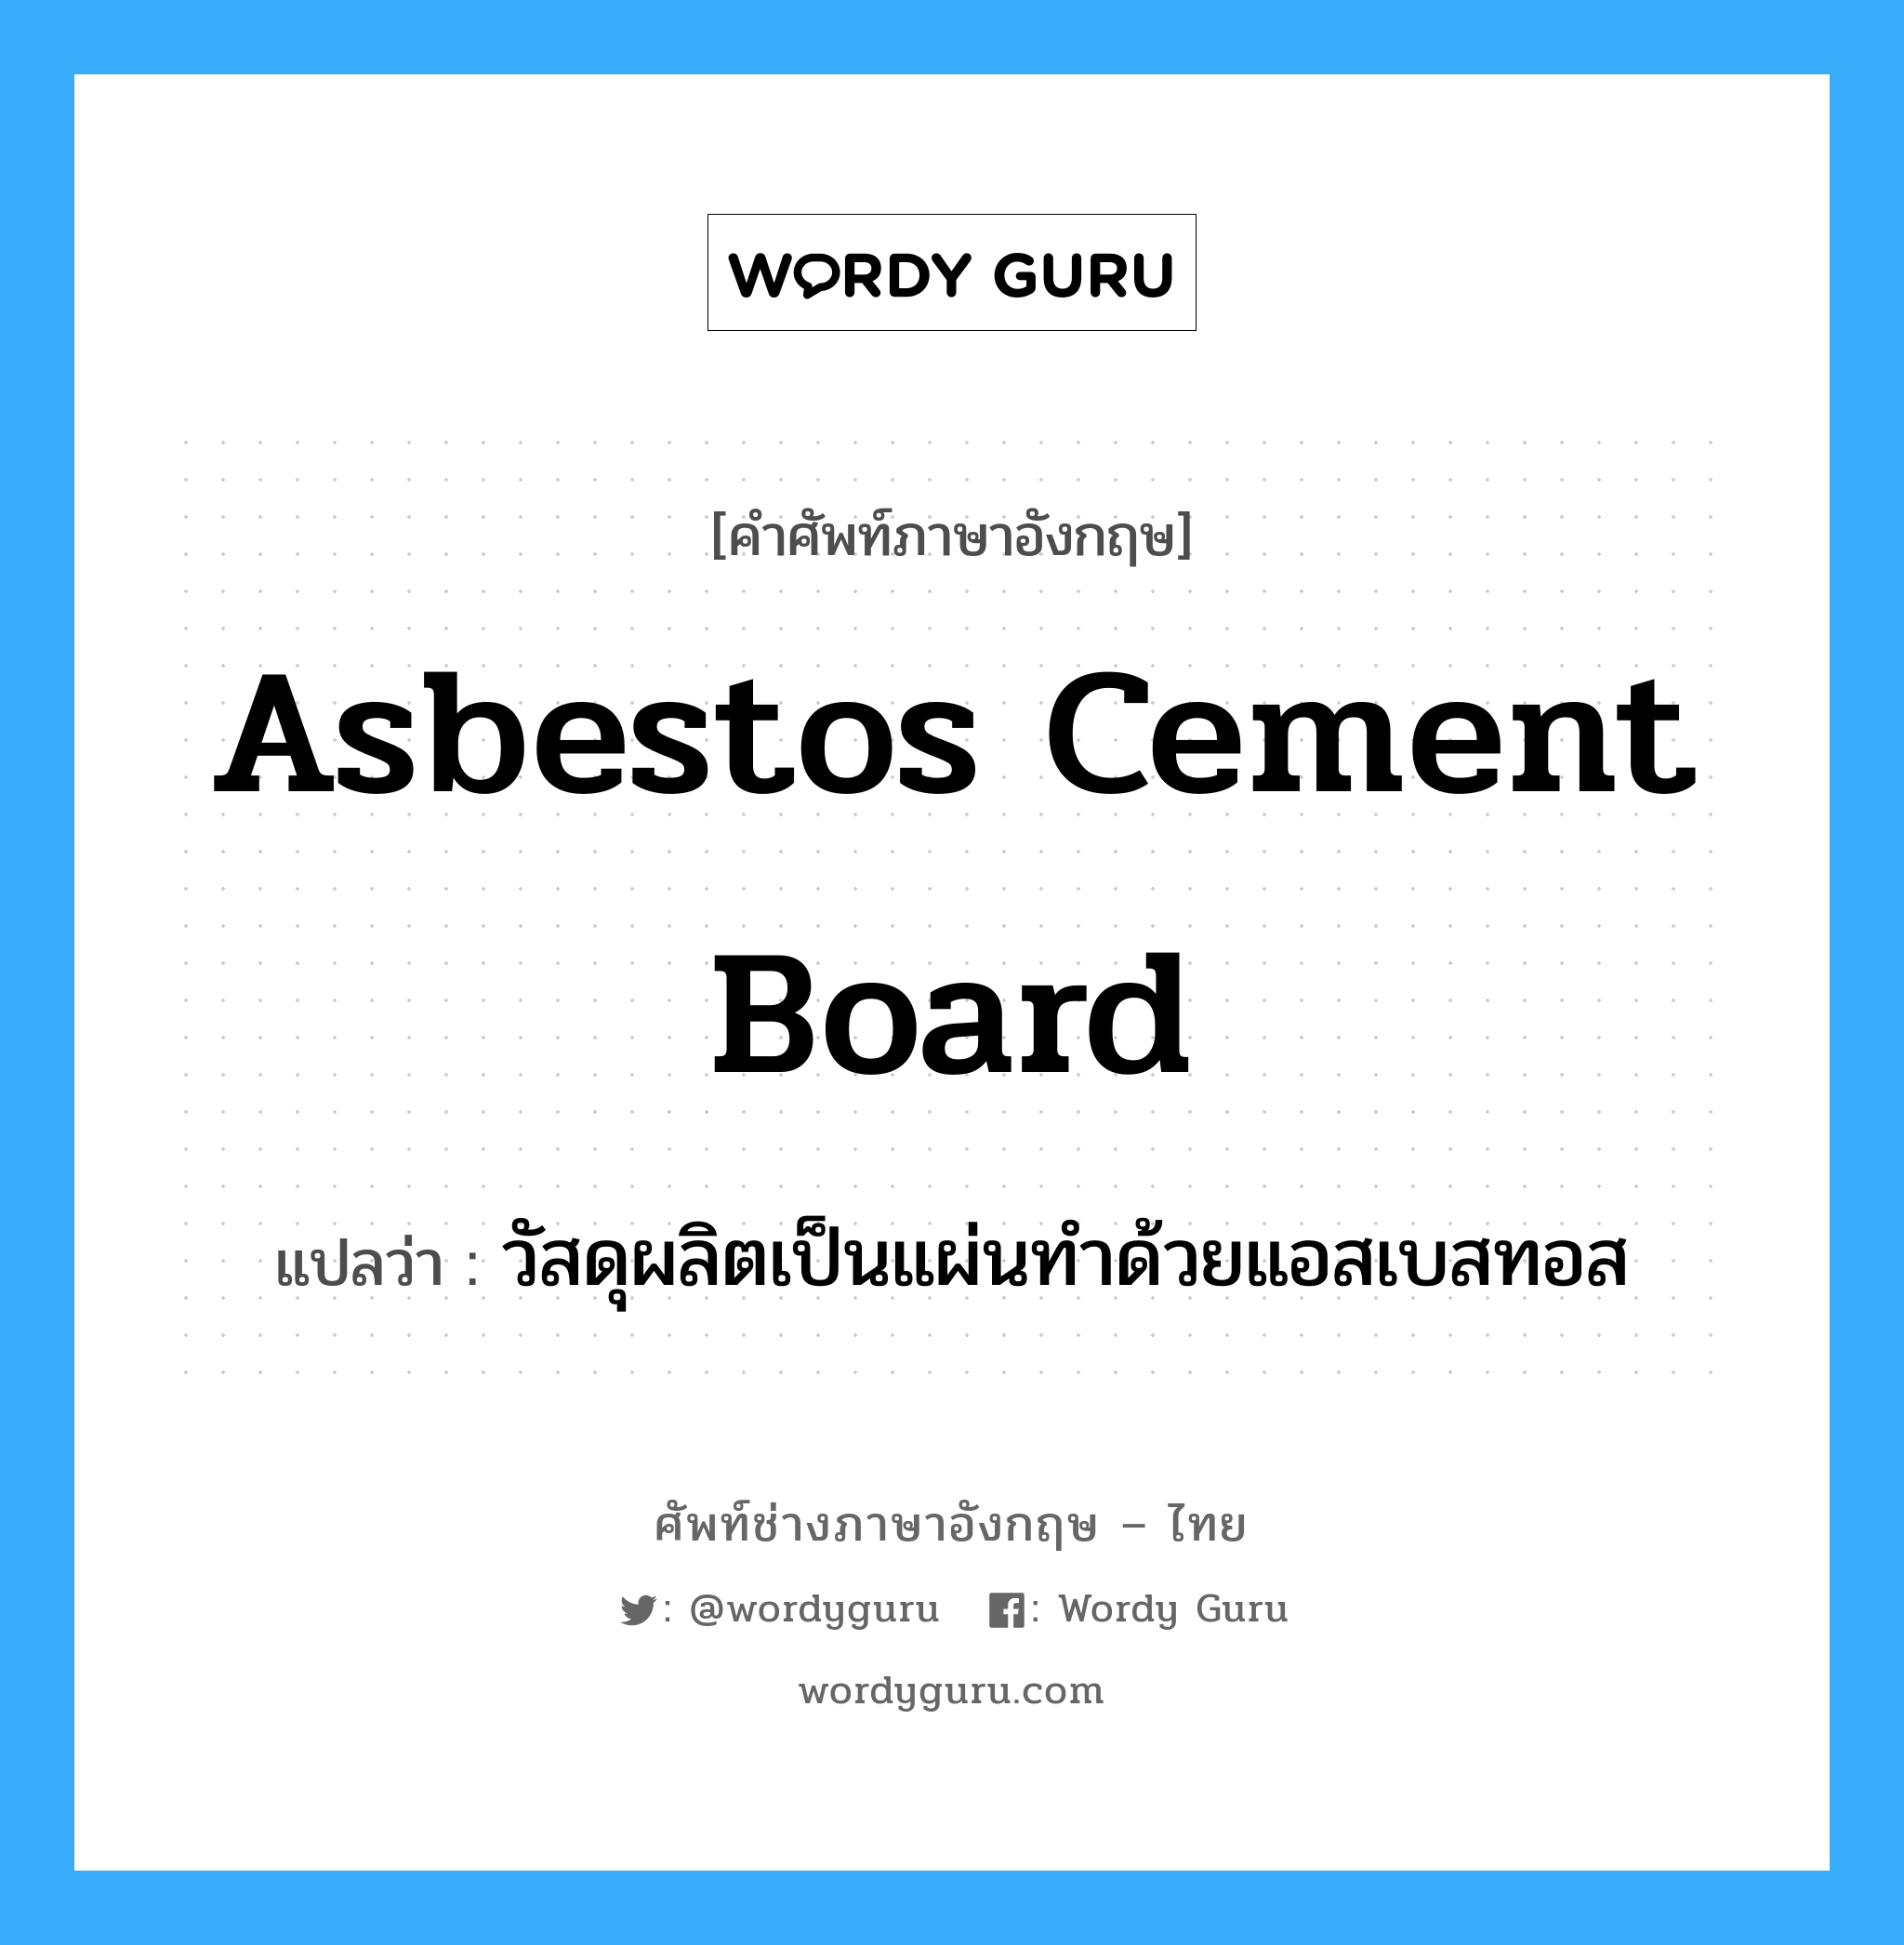 วัสดุผลิตเป็นแผ่นทำด้วยแอสเบสทอส ภาษาอังกฤษ?, คำศัพท์ช่างภาษาอังกฤษ - ไทย วัสดุผลิตเป็นแผ่นทำด้วยแอสเบสทอส คำศัพท์ภาษาอังกฤษ วัสดุผลิตเป็นแผ่นทำด้วยแอสเบสทอส แปลว่า asbestos cement board